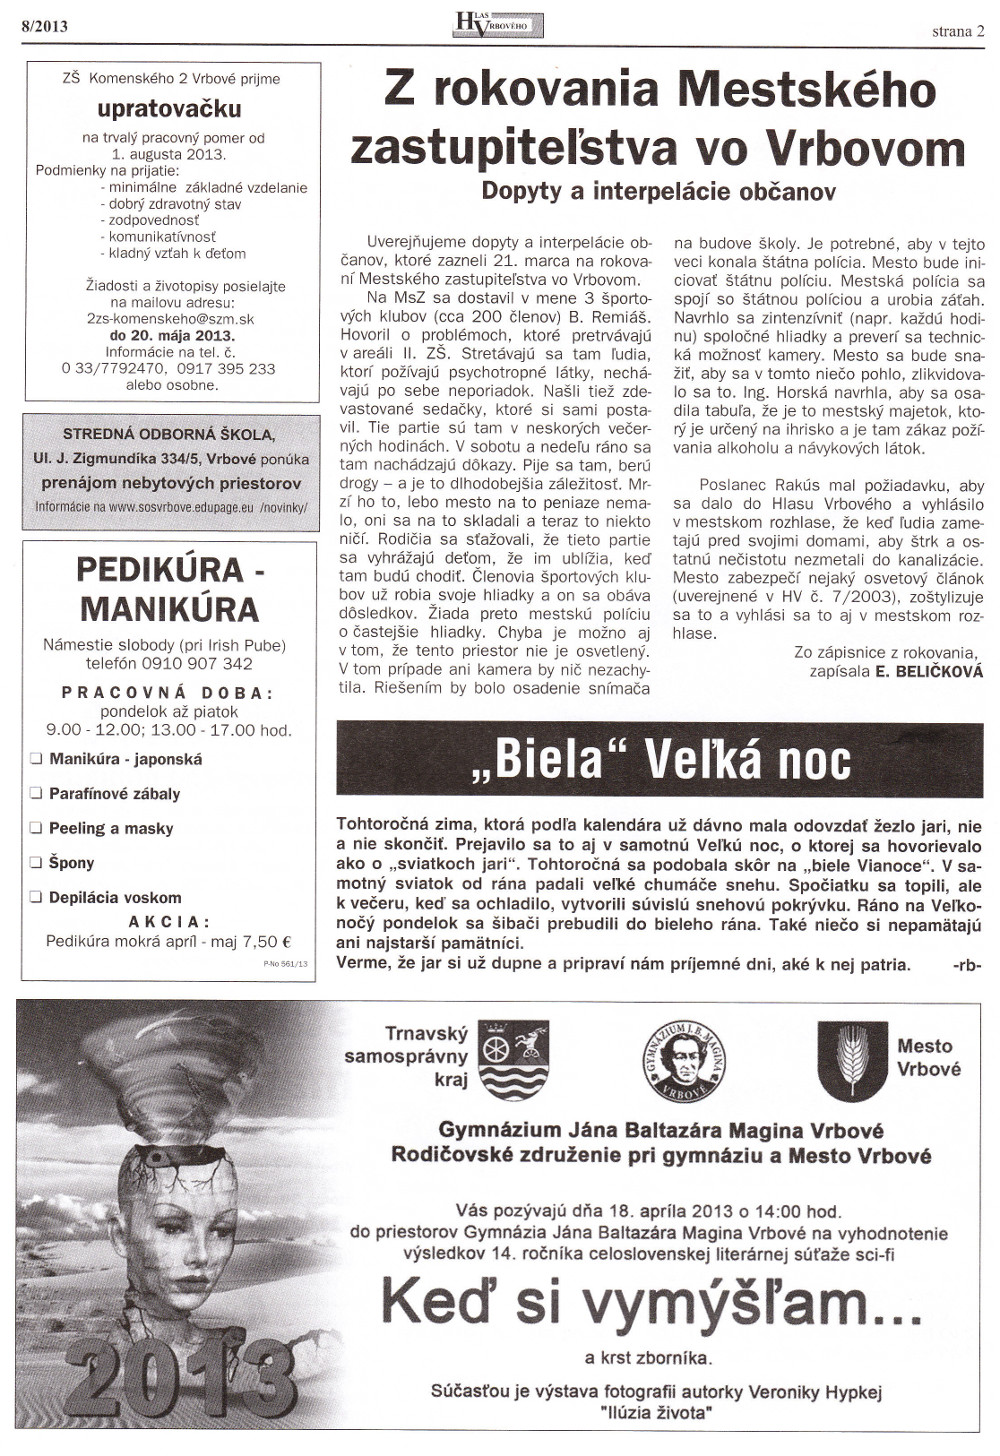 Hlas Vrbového 08/2013, strana 2